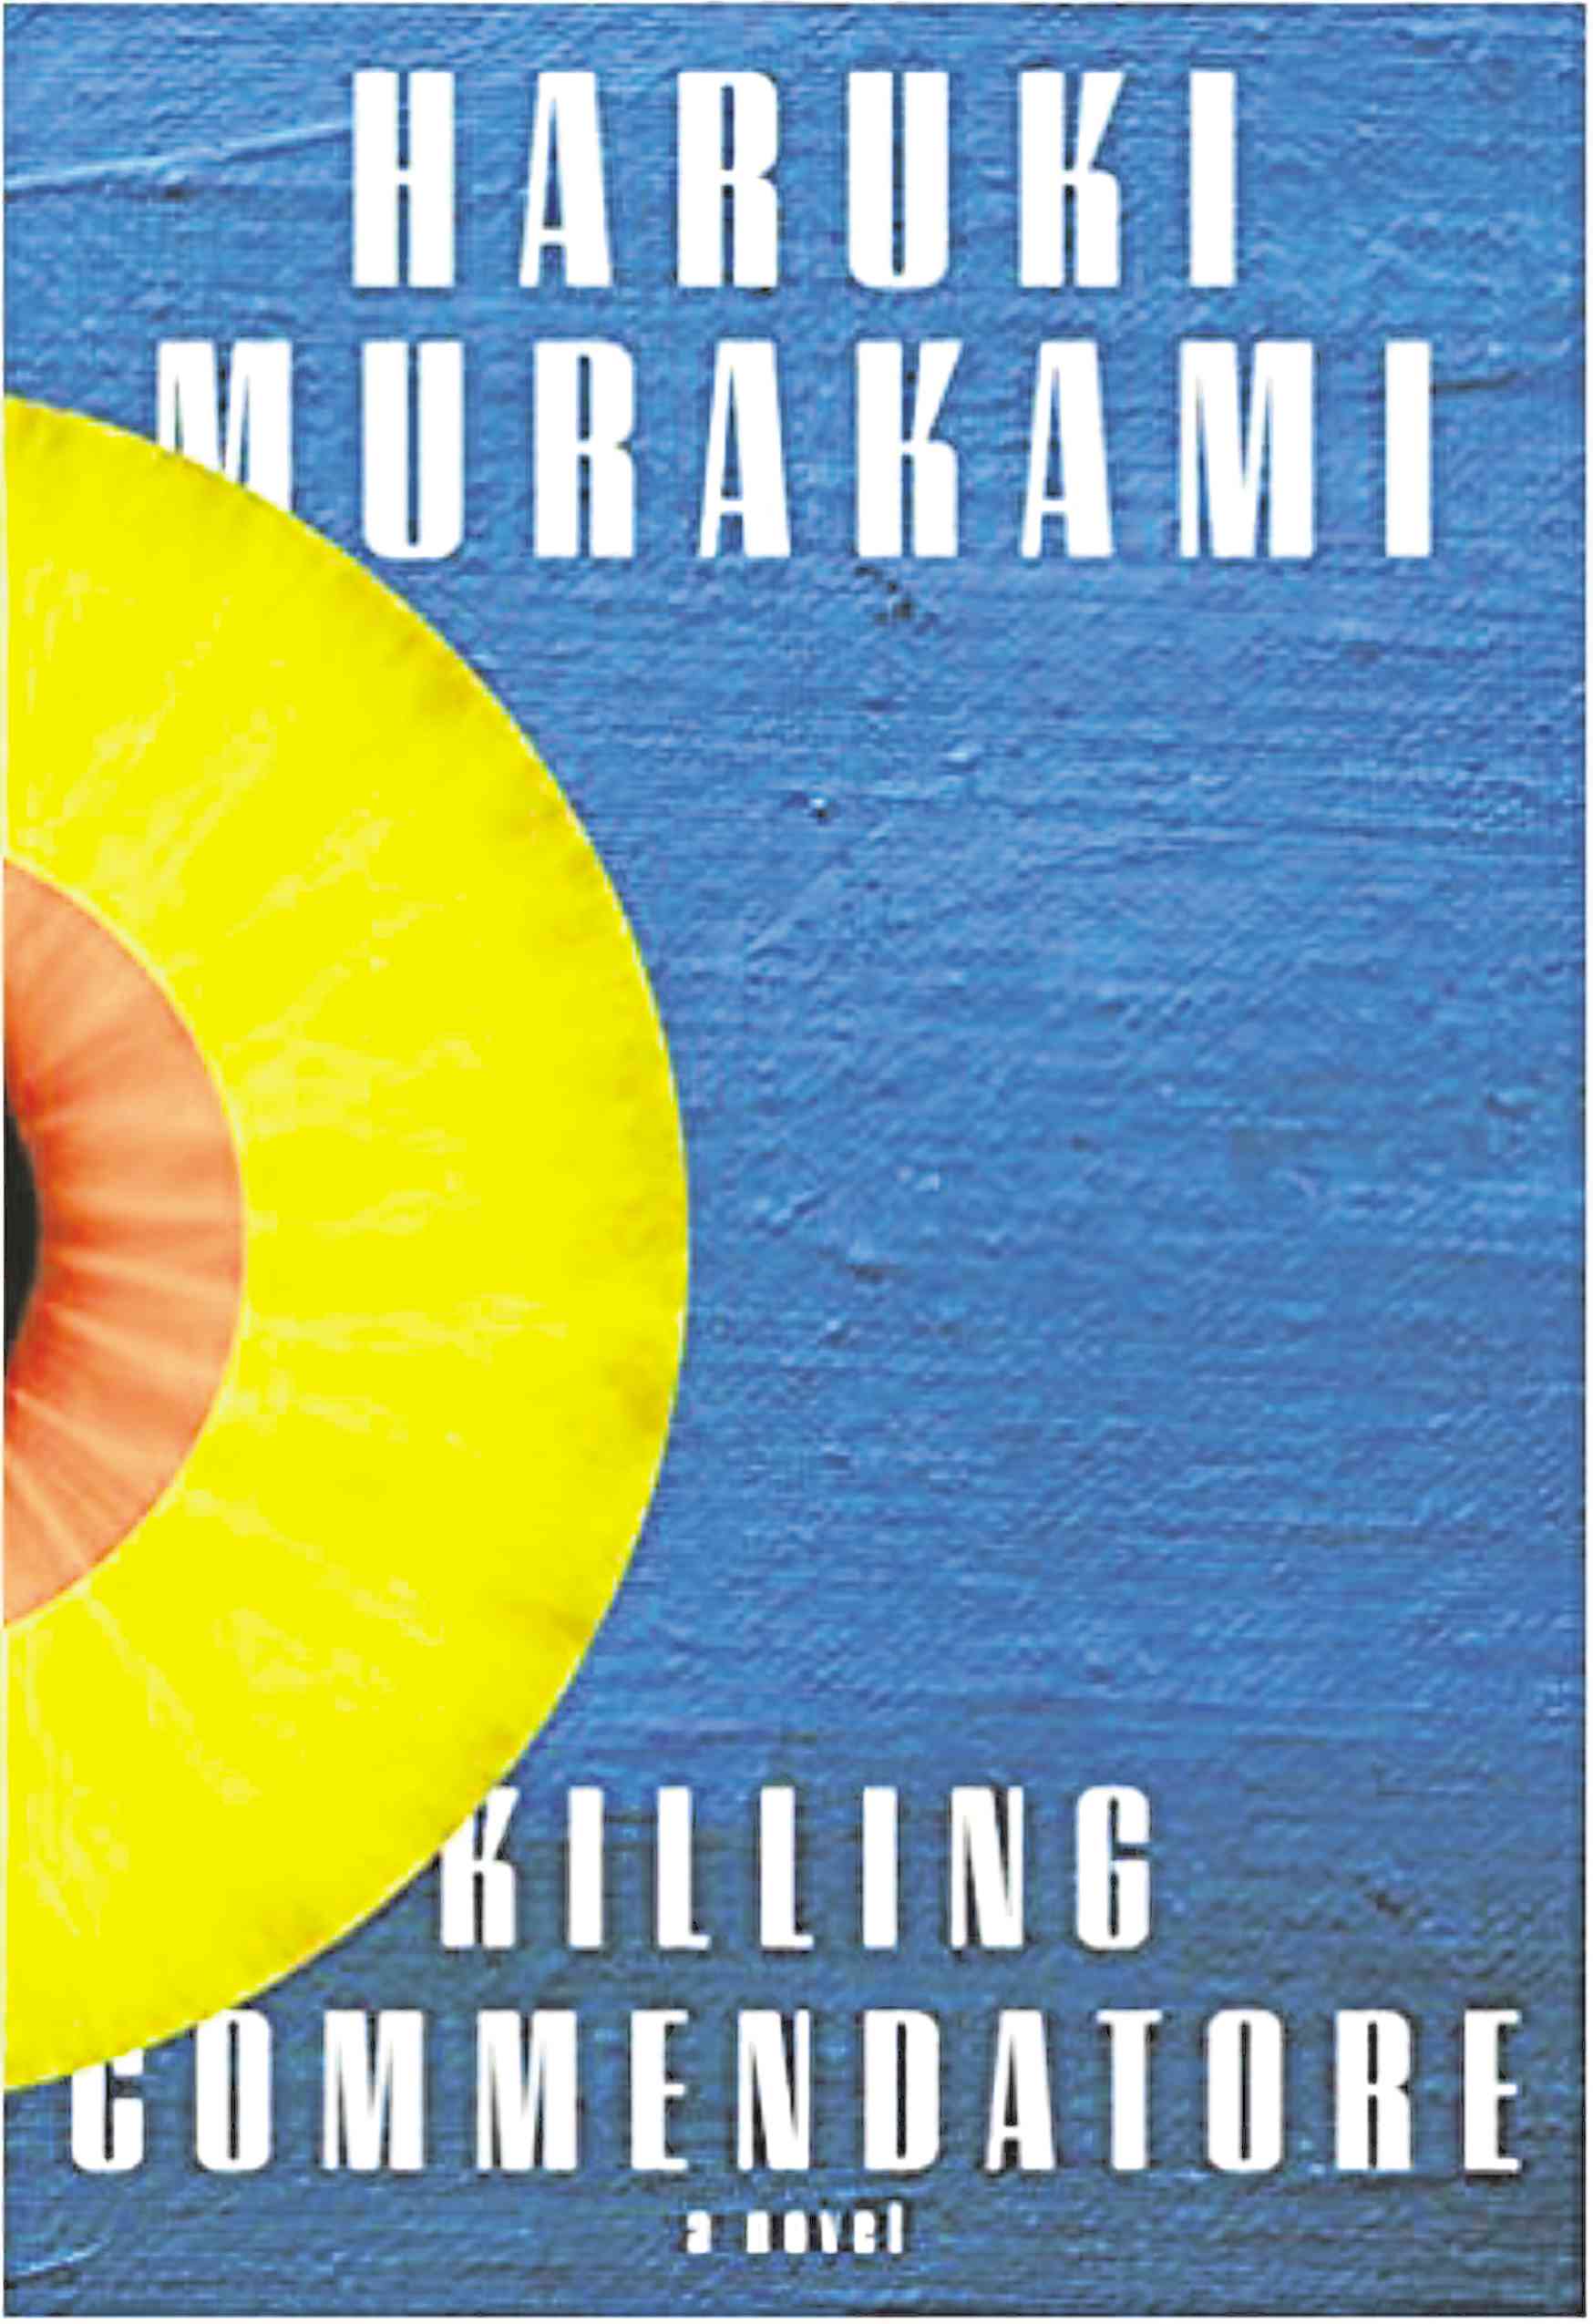 Haruki Murakami’s ‘Killing Commendatore’ is his strangest book yet